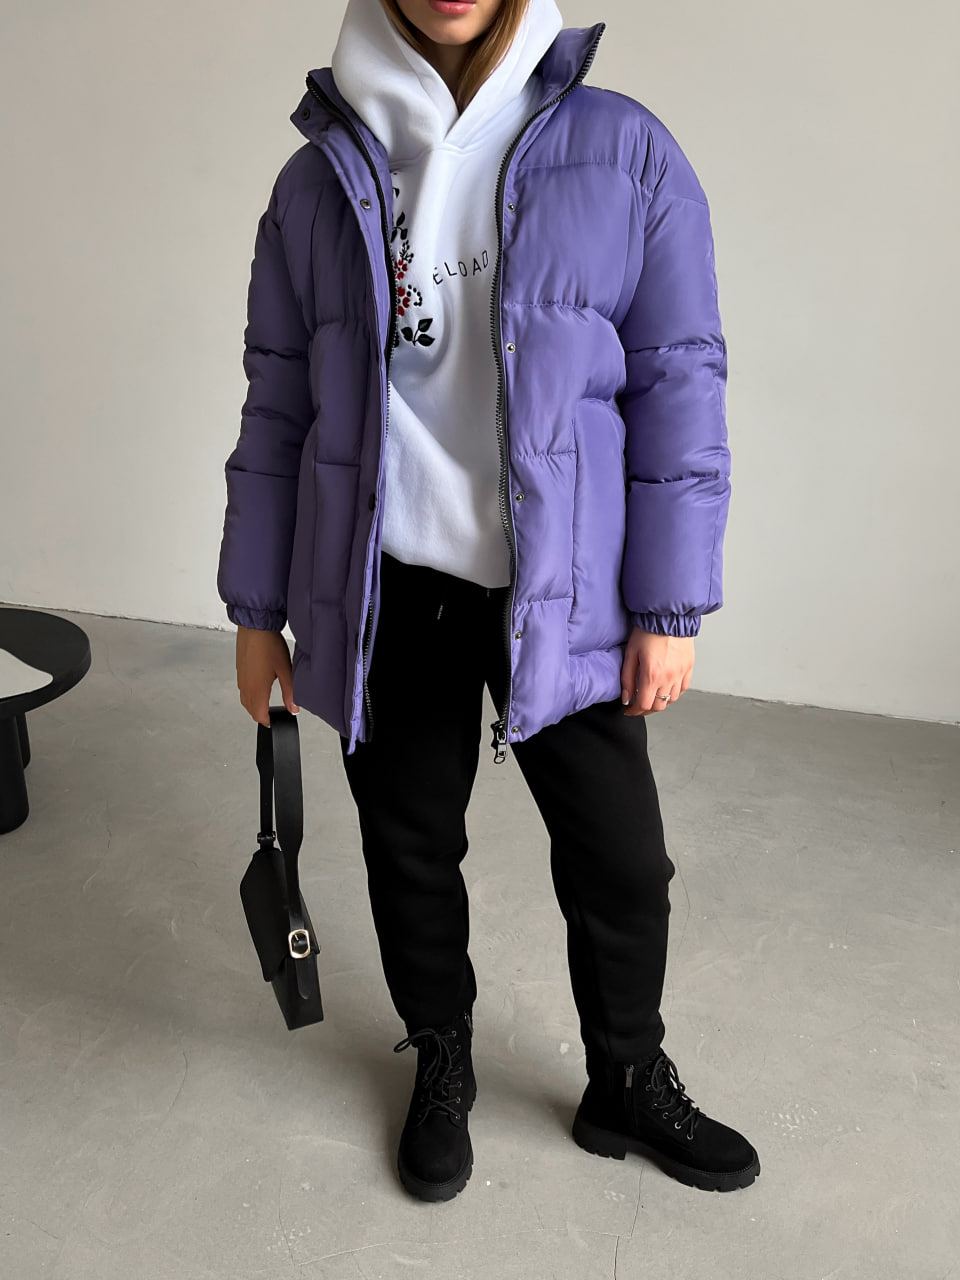 Жіноча зимова куртка-пуховик Reload Elly фіолетова / Зимовий пуховик оверсайз стильний теплий - Фото 2